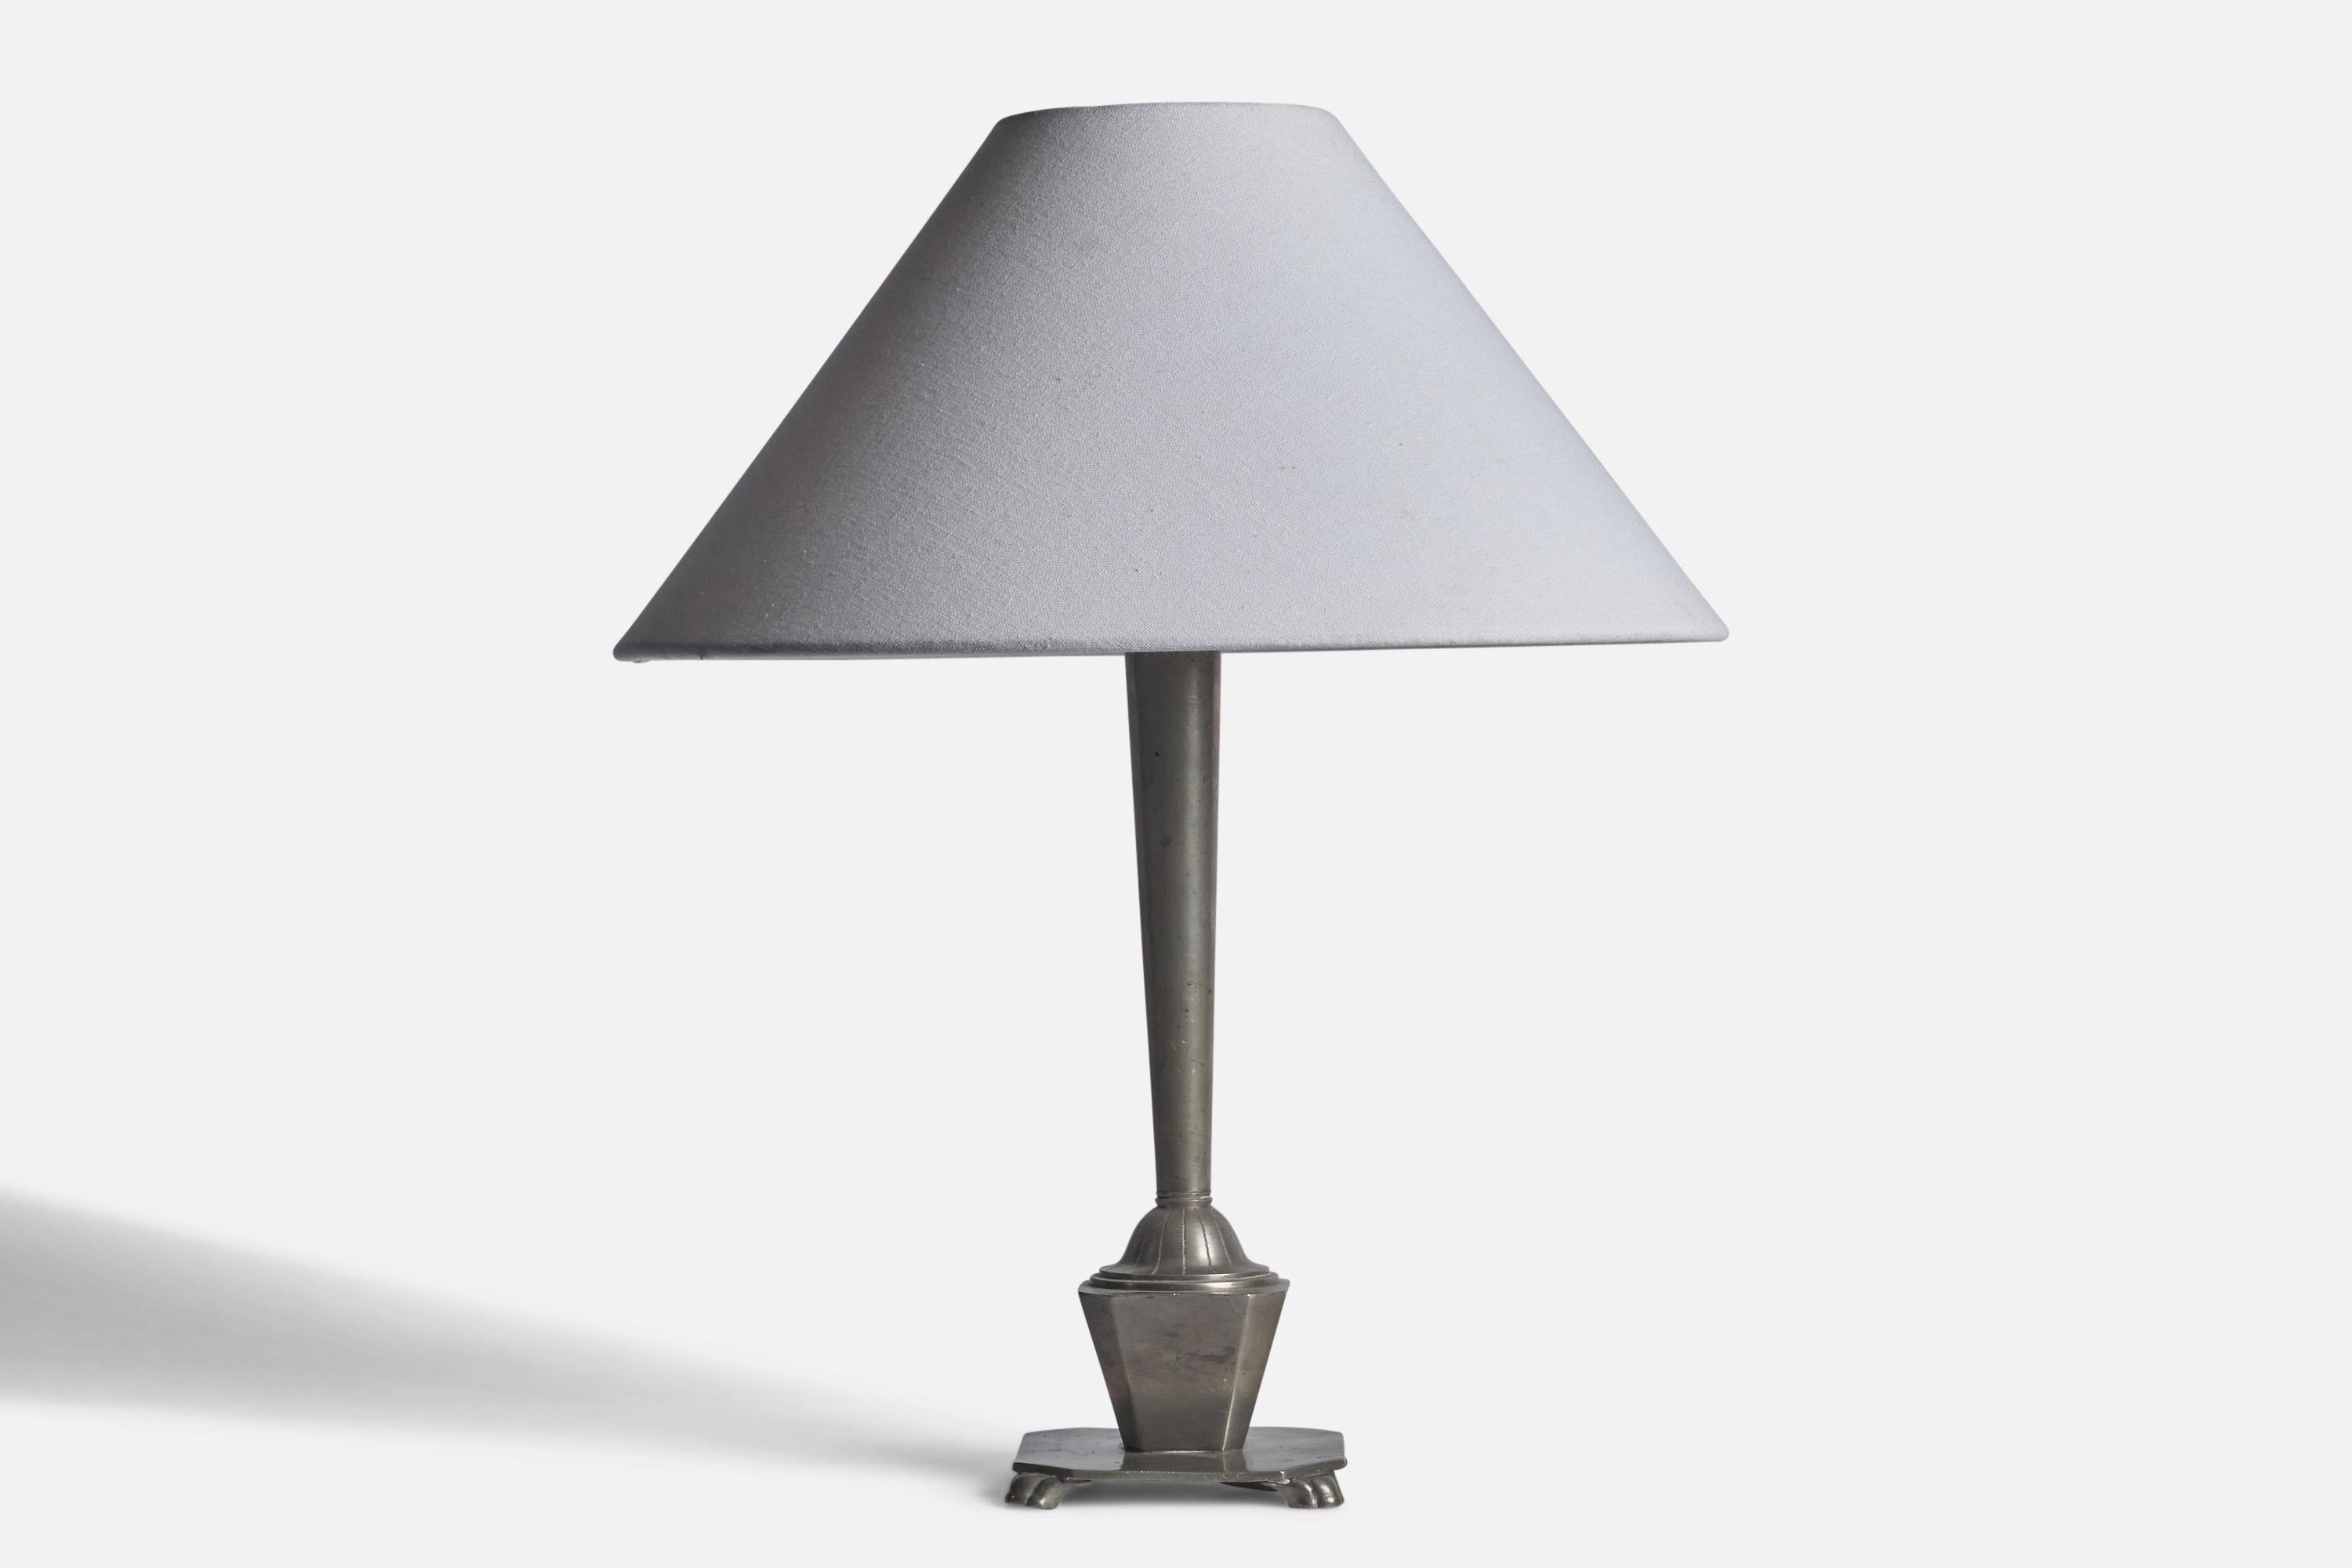 Lampe de table en étain conçue et produite en Suède, années 1930.

Dimensions de la lampe (pouces) : 15